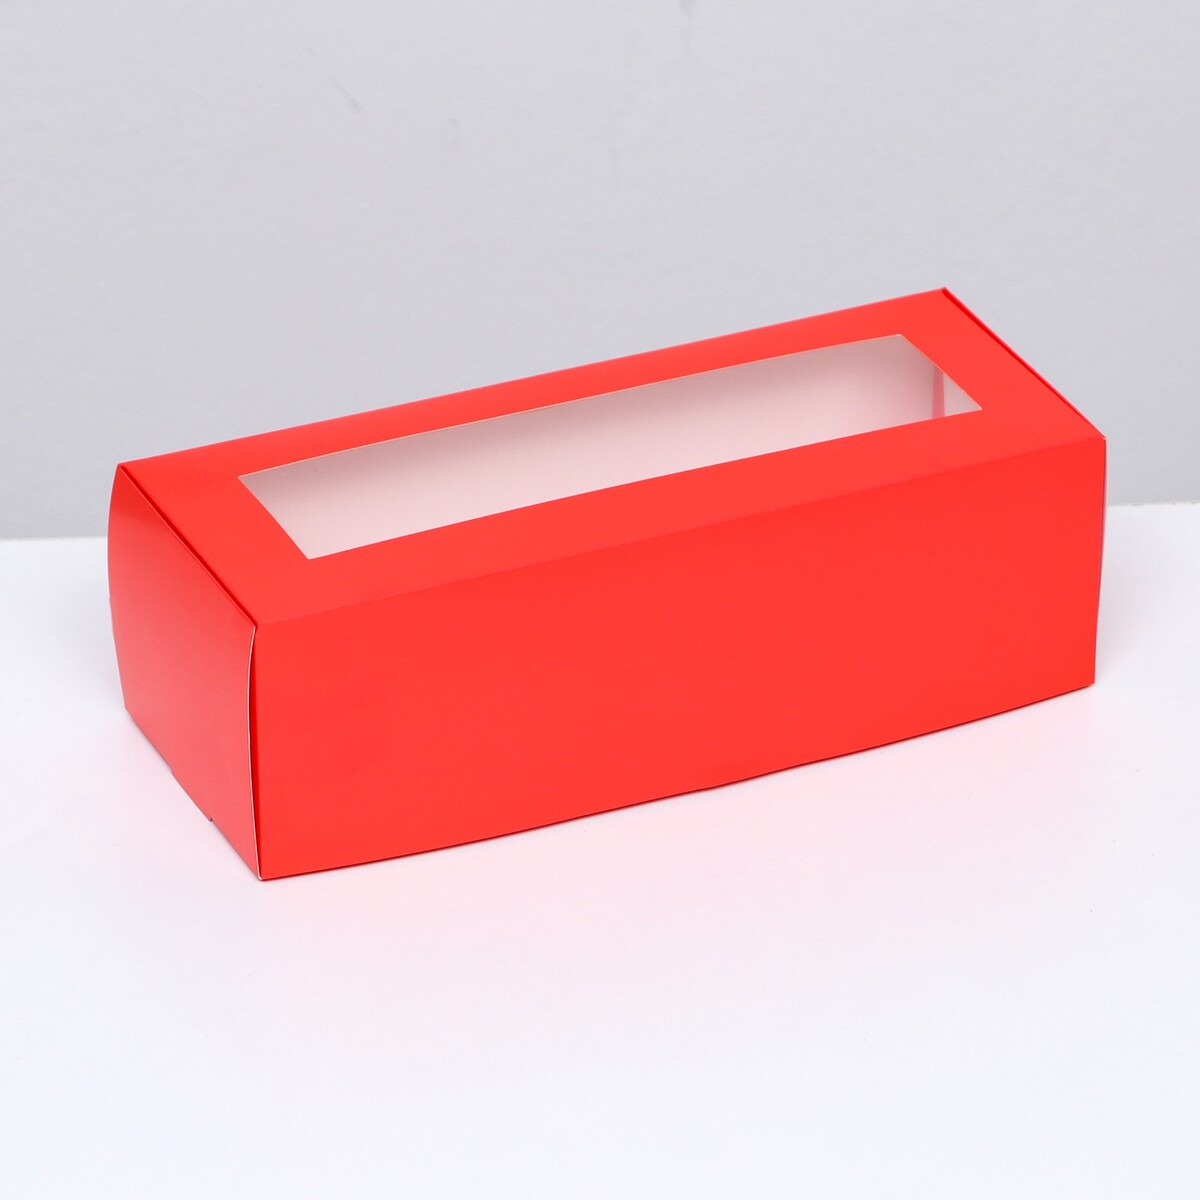 Коробка складная с окном под рулет, красная, 26 х 10 х 8 см коробка под рулет с ручками белая 27 5 х 11 х 10 см